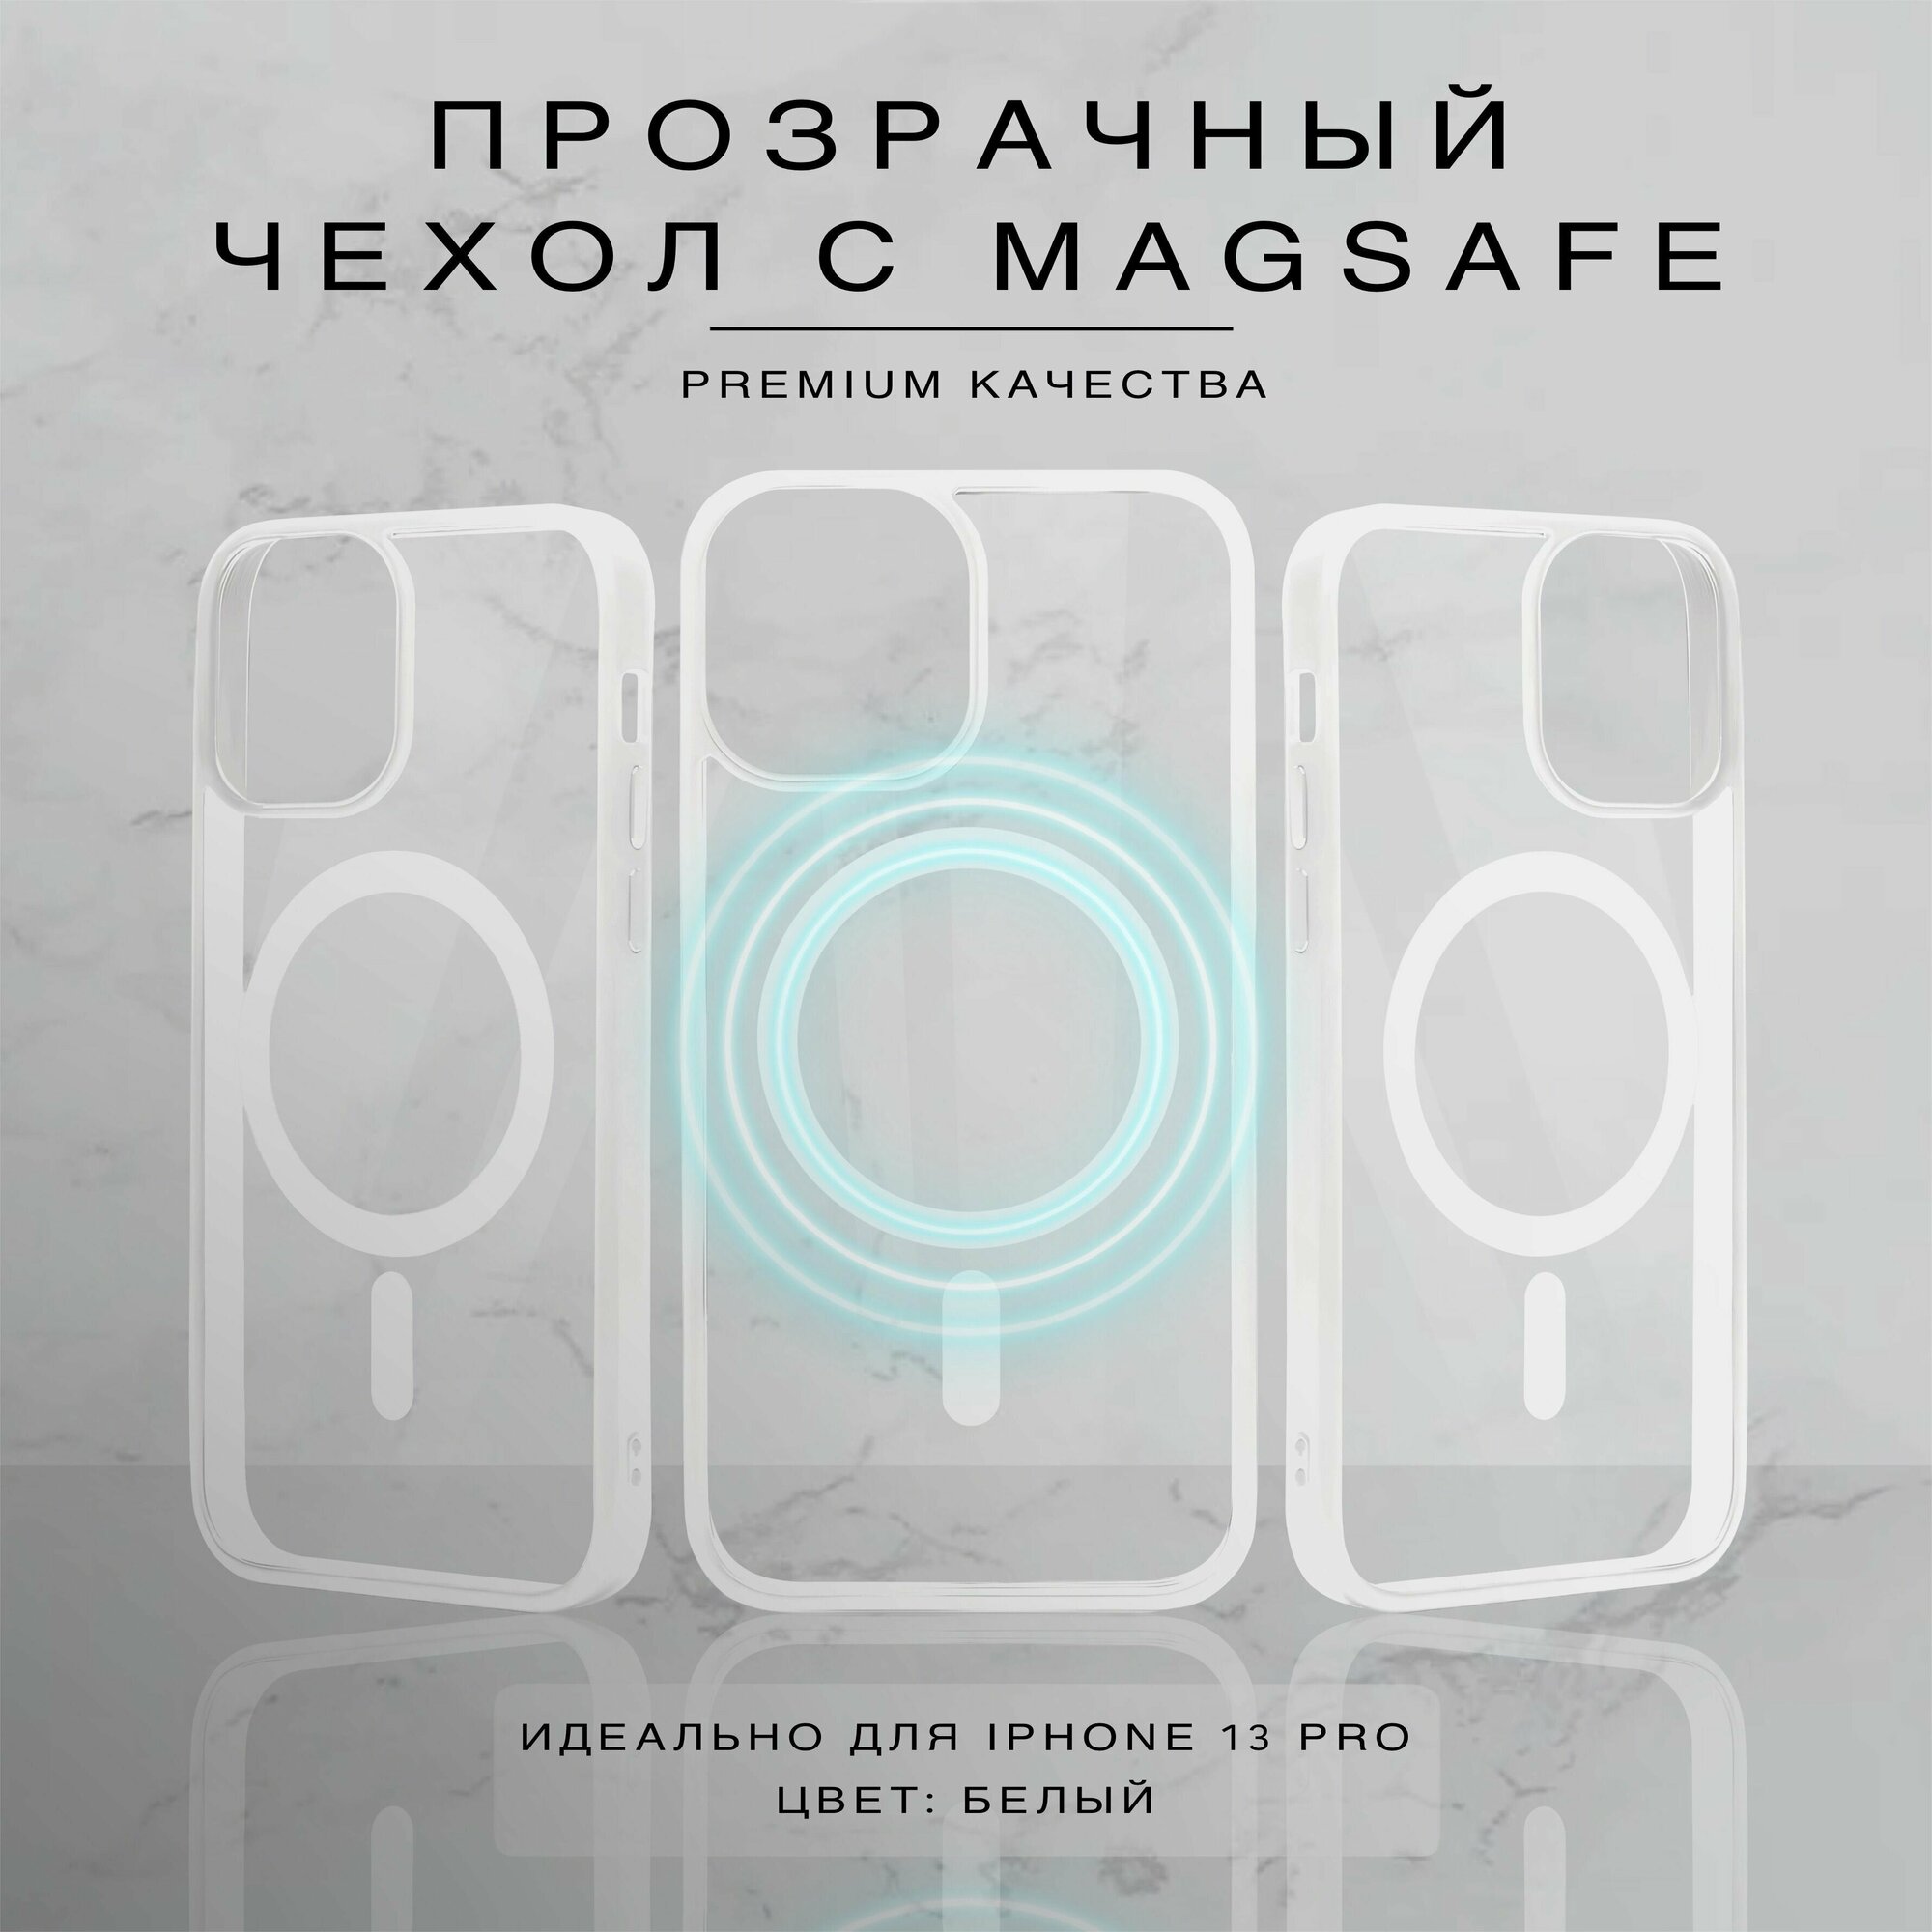 Прозрачный чехол для iPhone 13 Pro с поддержкой Magsafe, белый